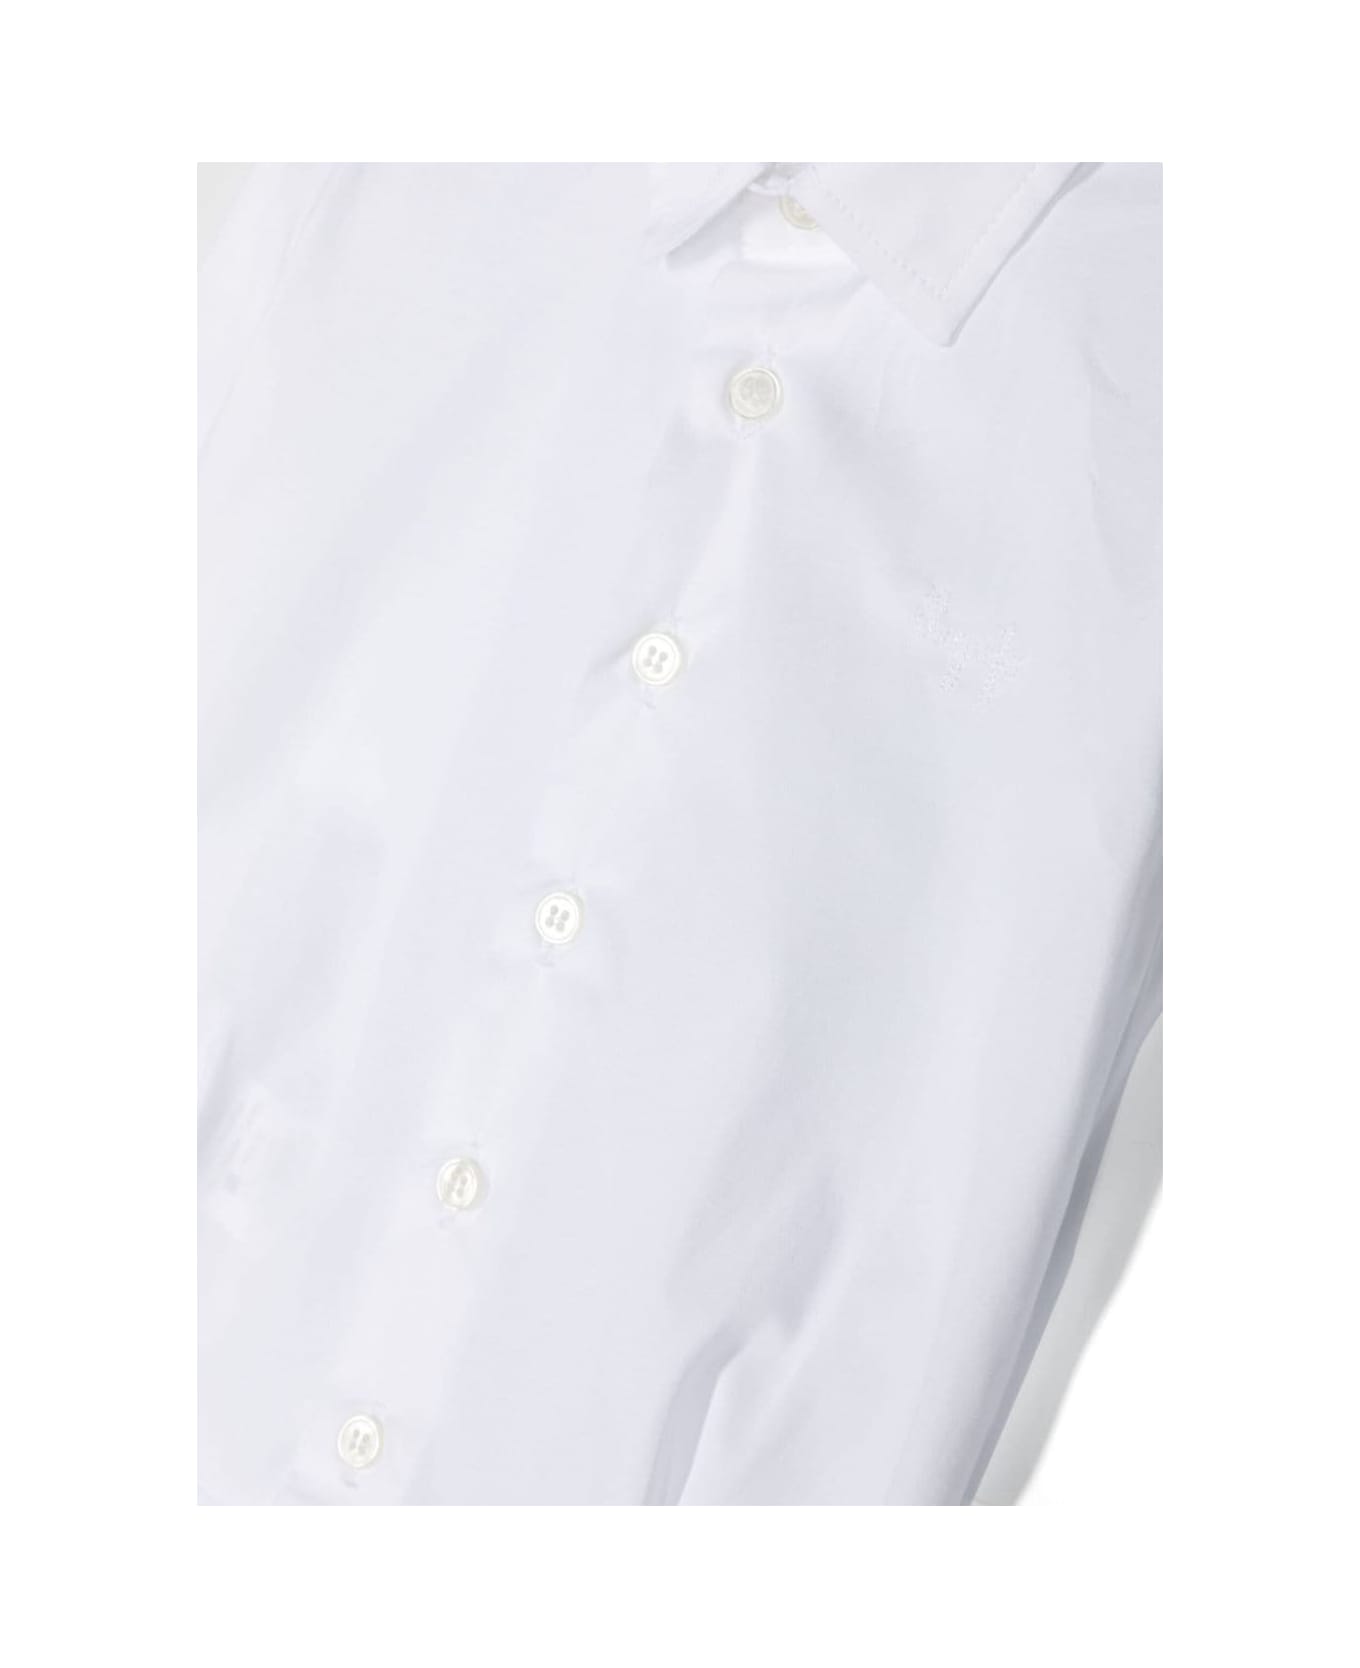 Il Gufo Body Camicia - White